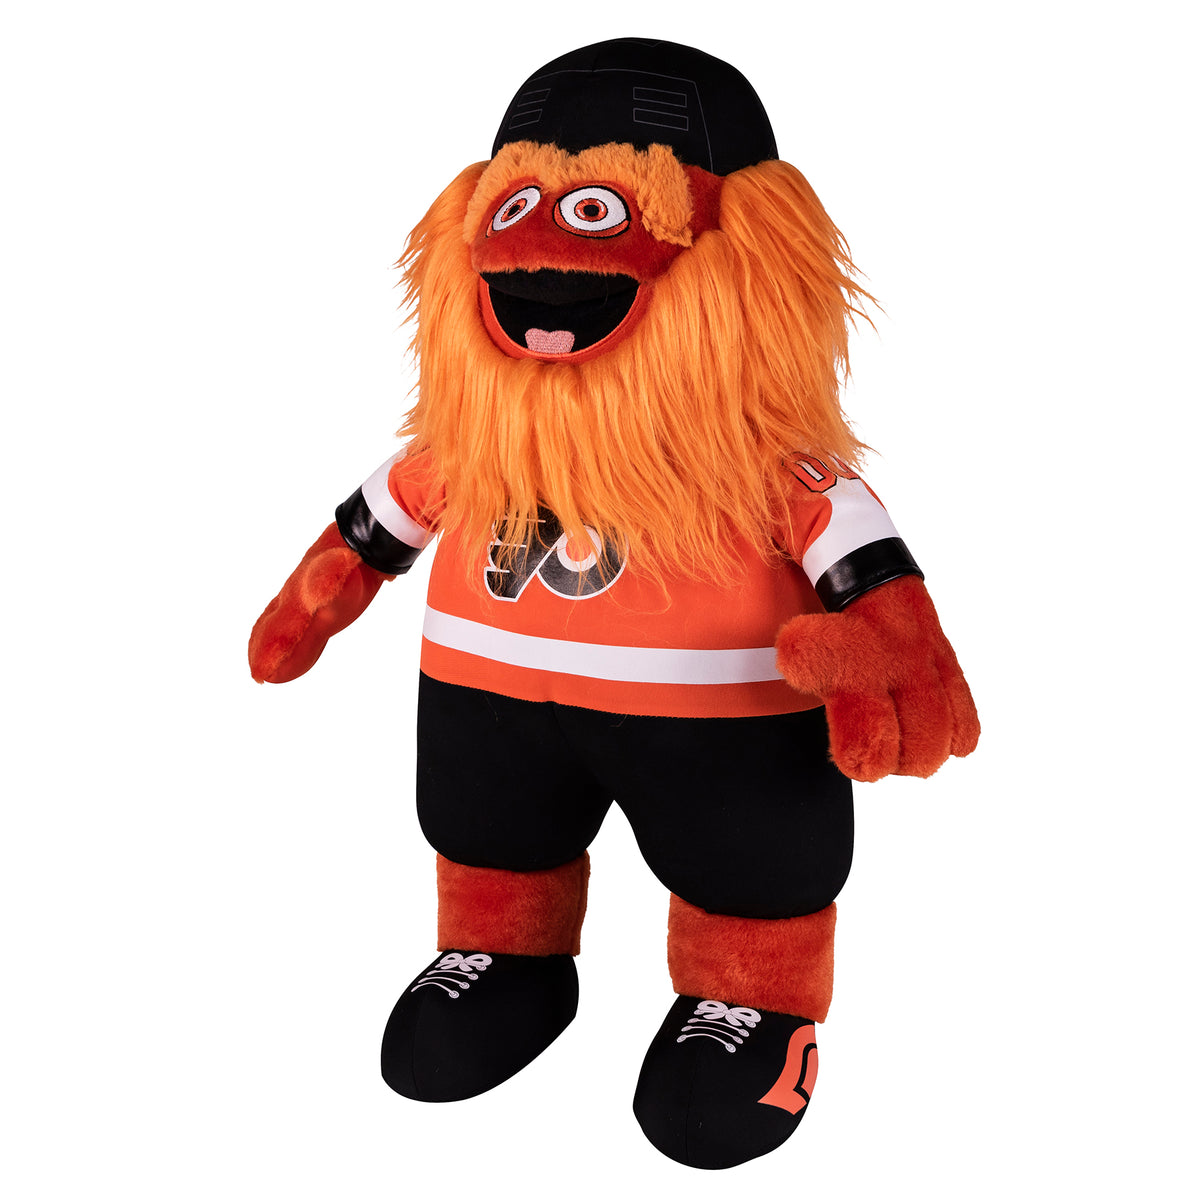 Philadelphia Flyers  Gritty 20&quot; Jumbo Mascot Plush Figure